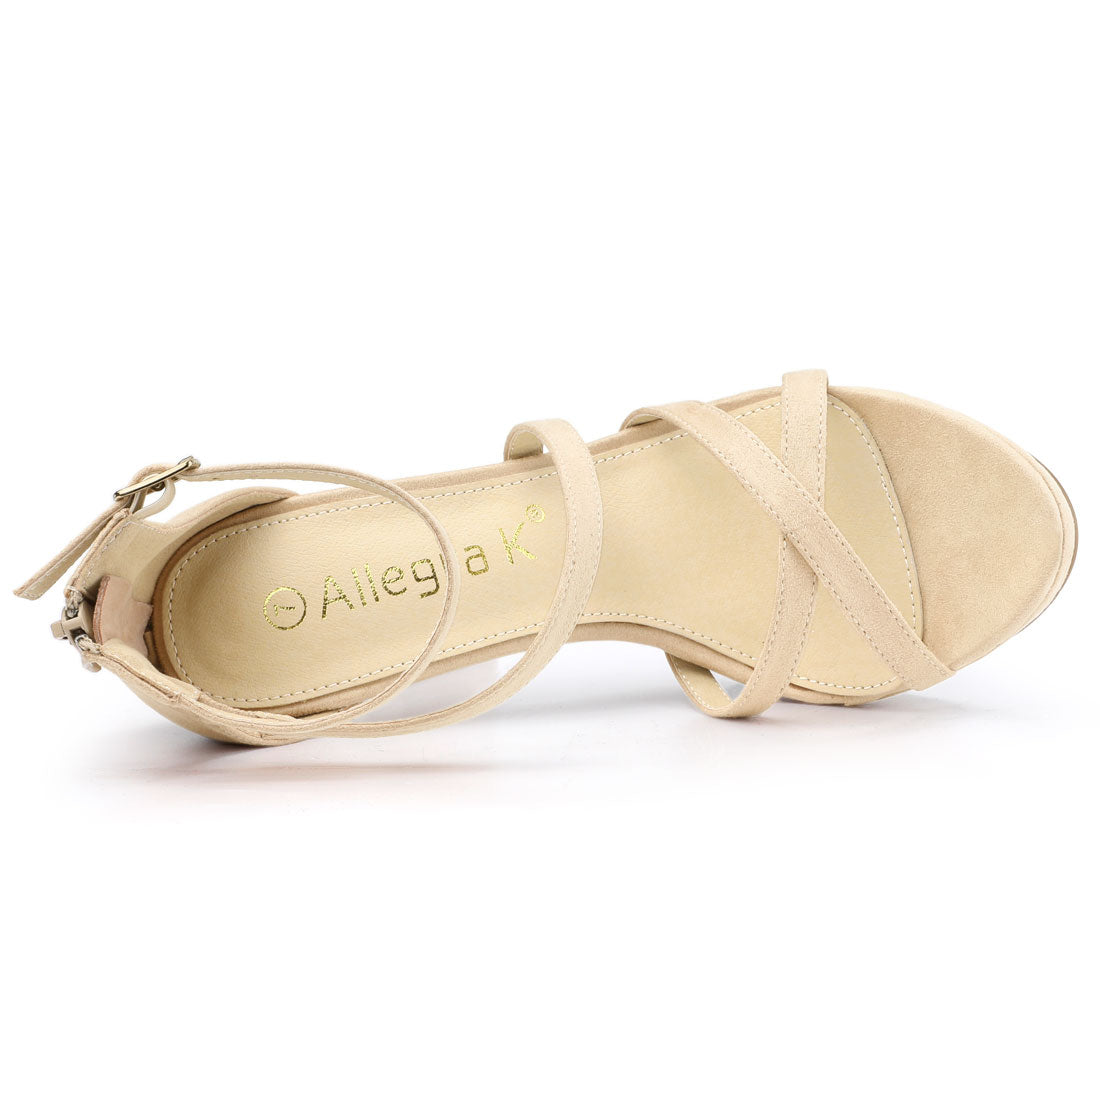 Allegra K Strappy Platform Stiletto Heel Sandals